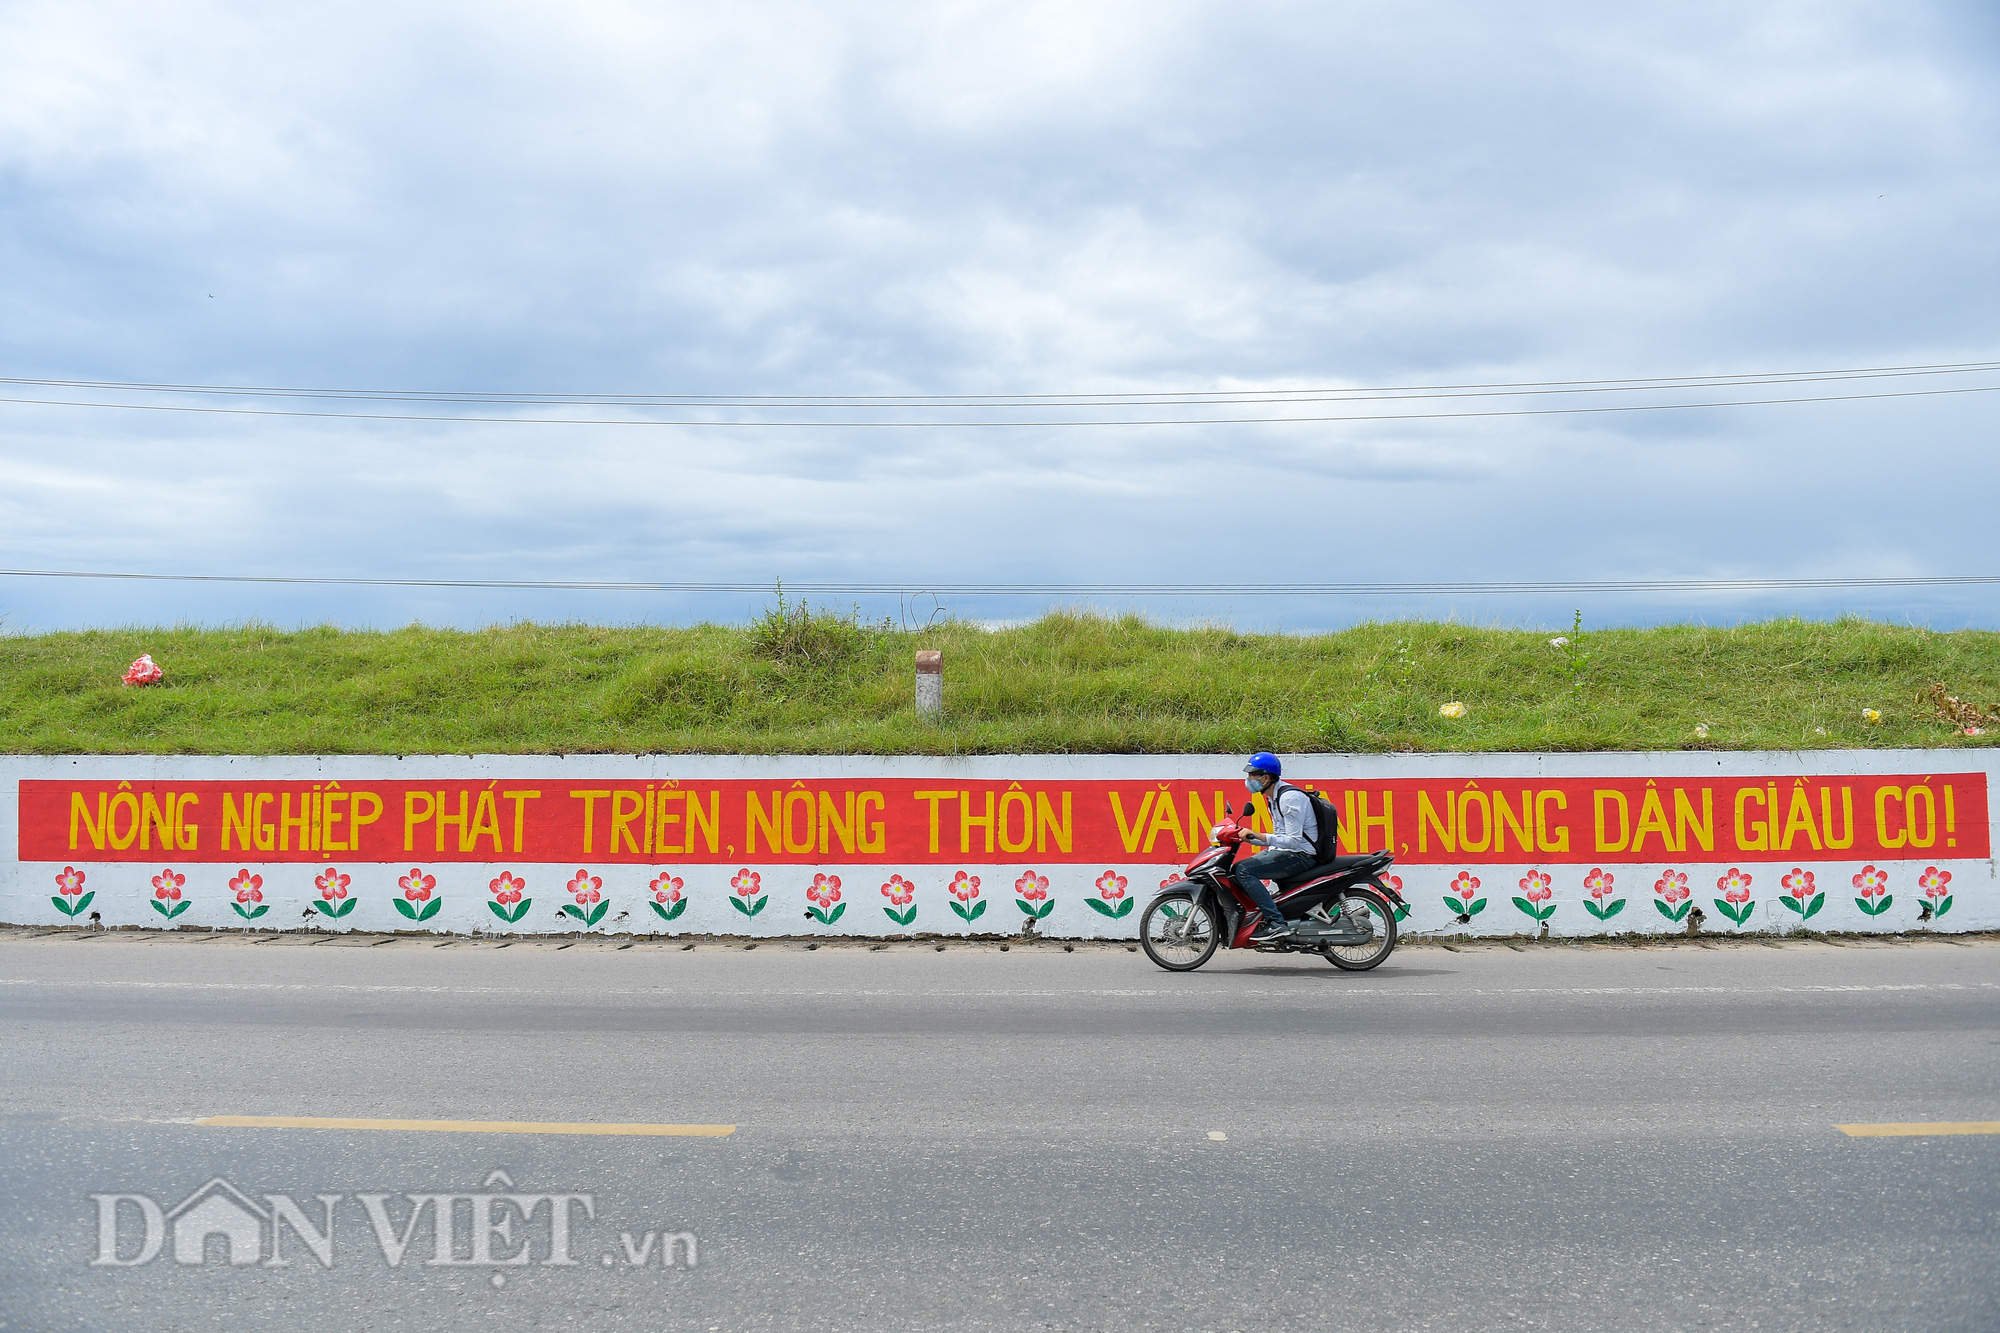 Ngỡ ngàng con đường bích họa dài hơn 2km mới xuất hiện ở Hà Nội - Ảnh 13.